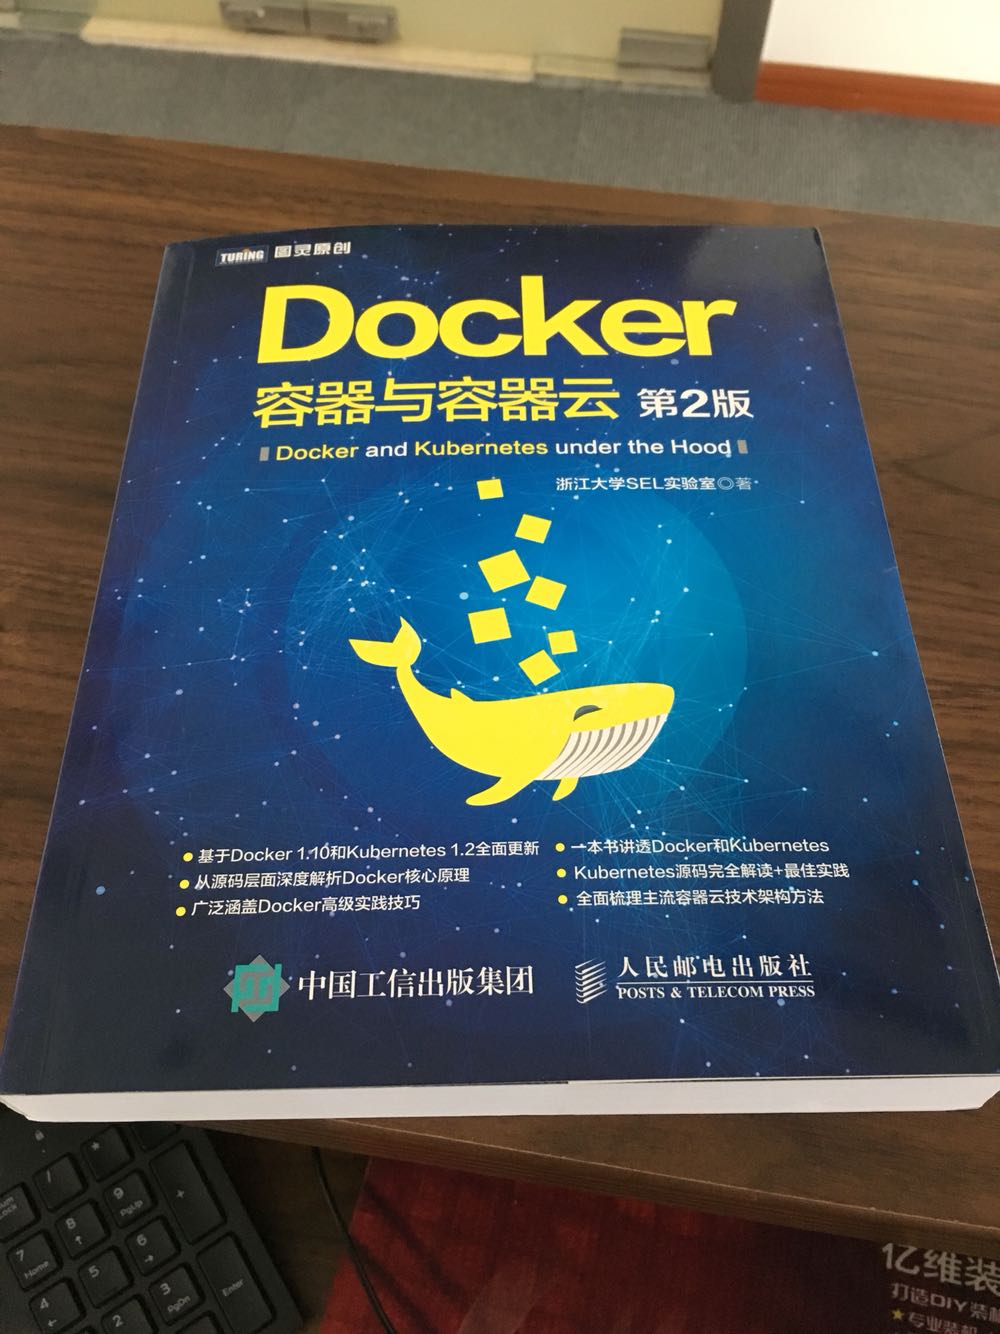 国内很不错的一本Docker的书，值得一看。